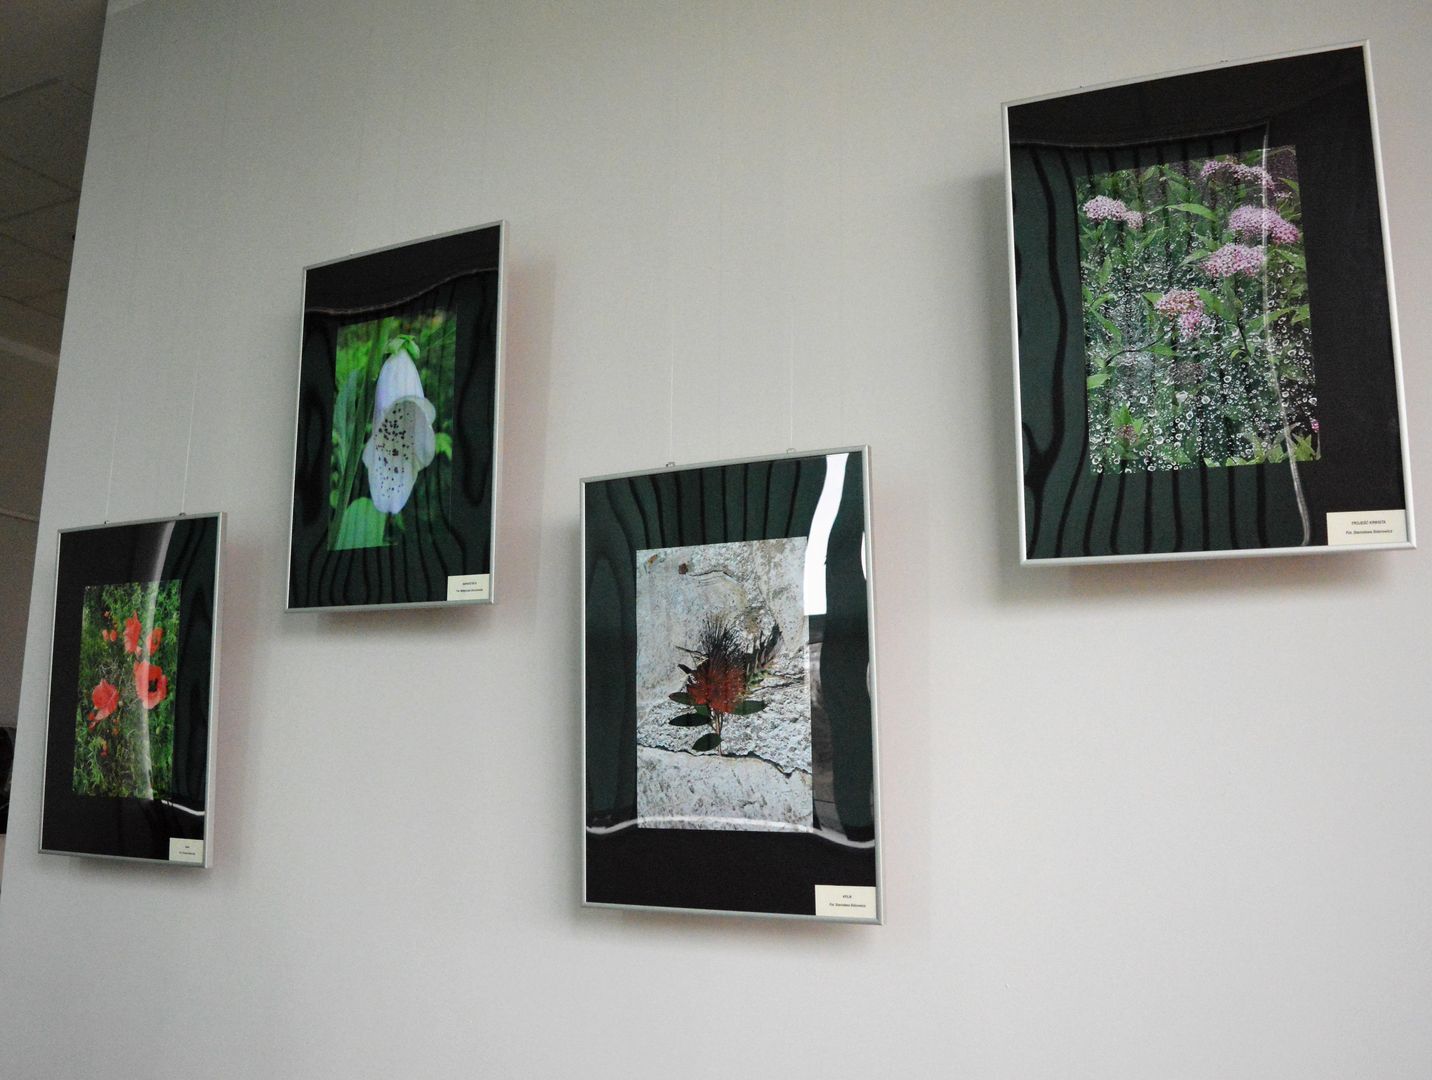 Fotografie w galerii Suplement przedstawiające polne kwiaty